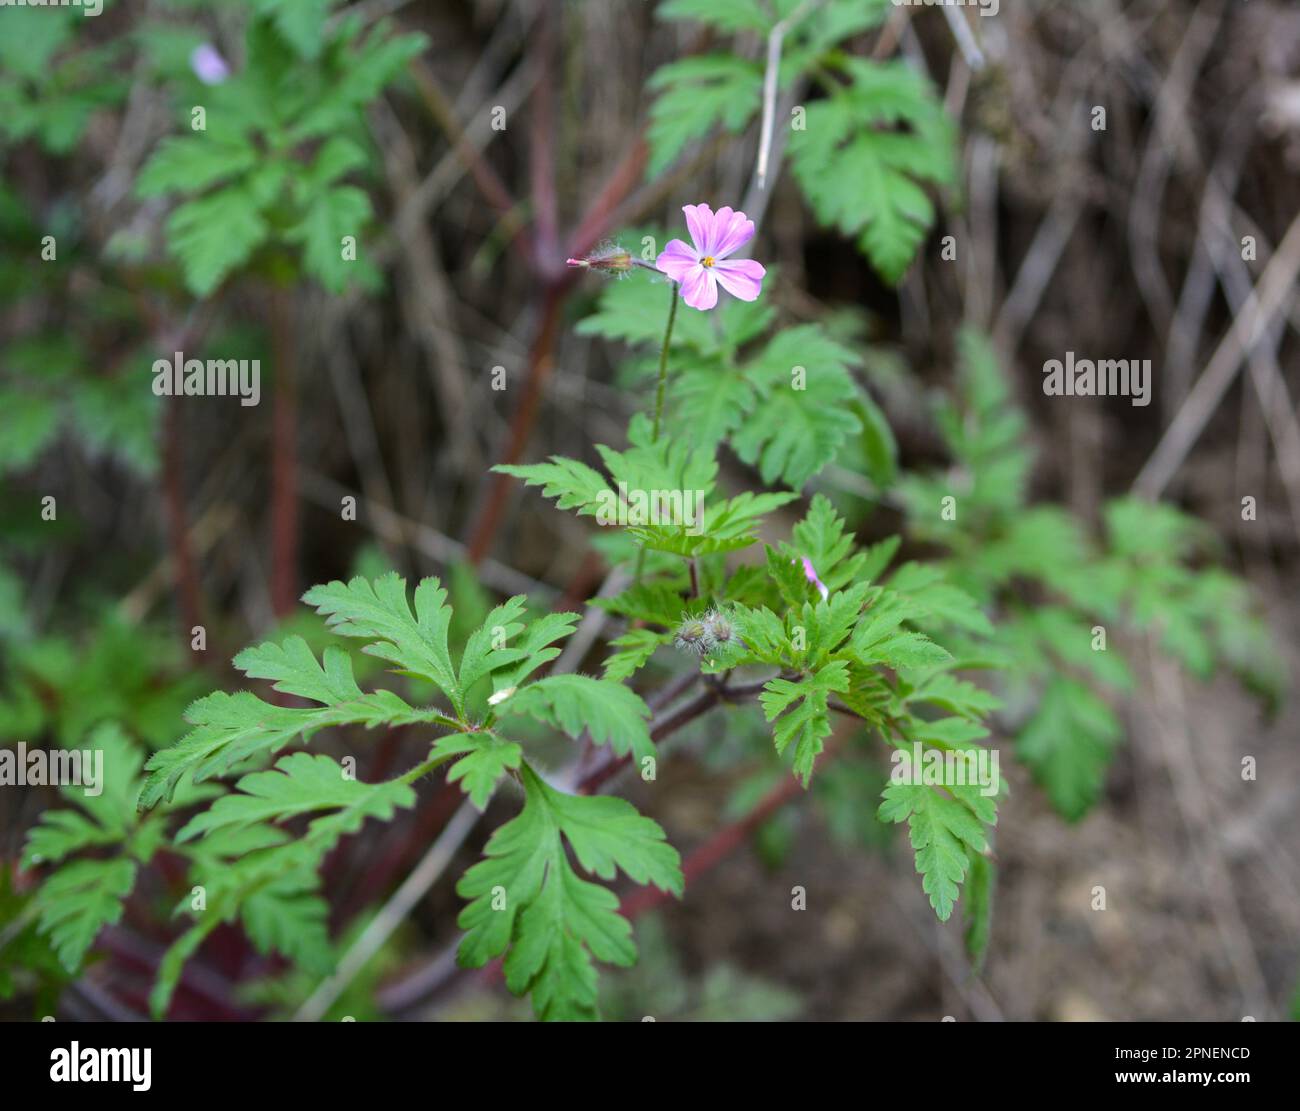 Geranium (Geranium robertianum) grows in the wild Stock Photo